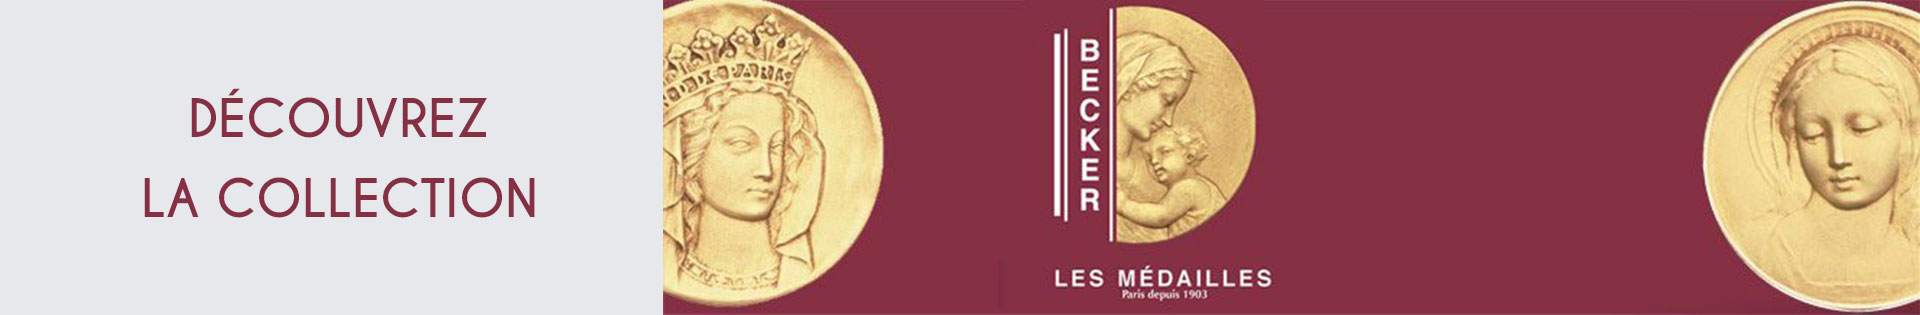 Marques de bijoux - Becker - Signe du zodiaque Lion